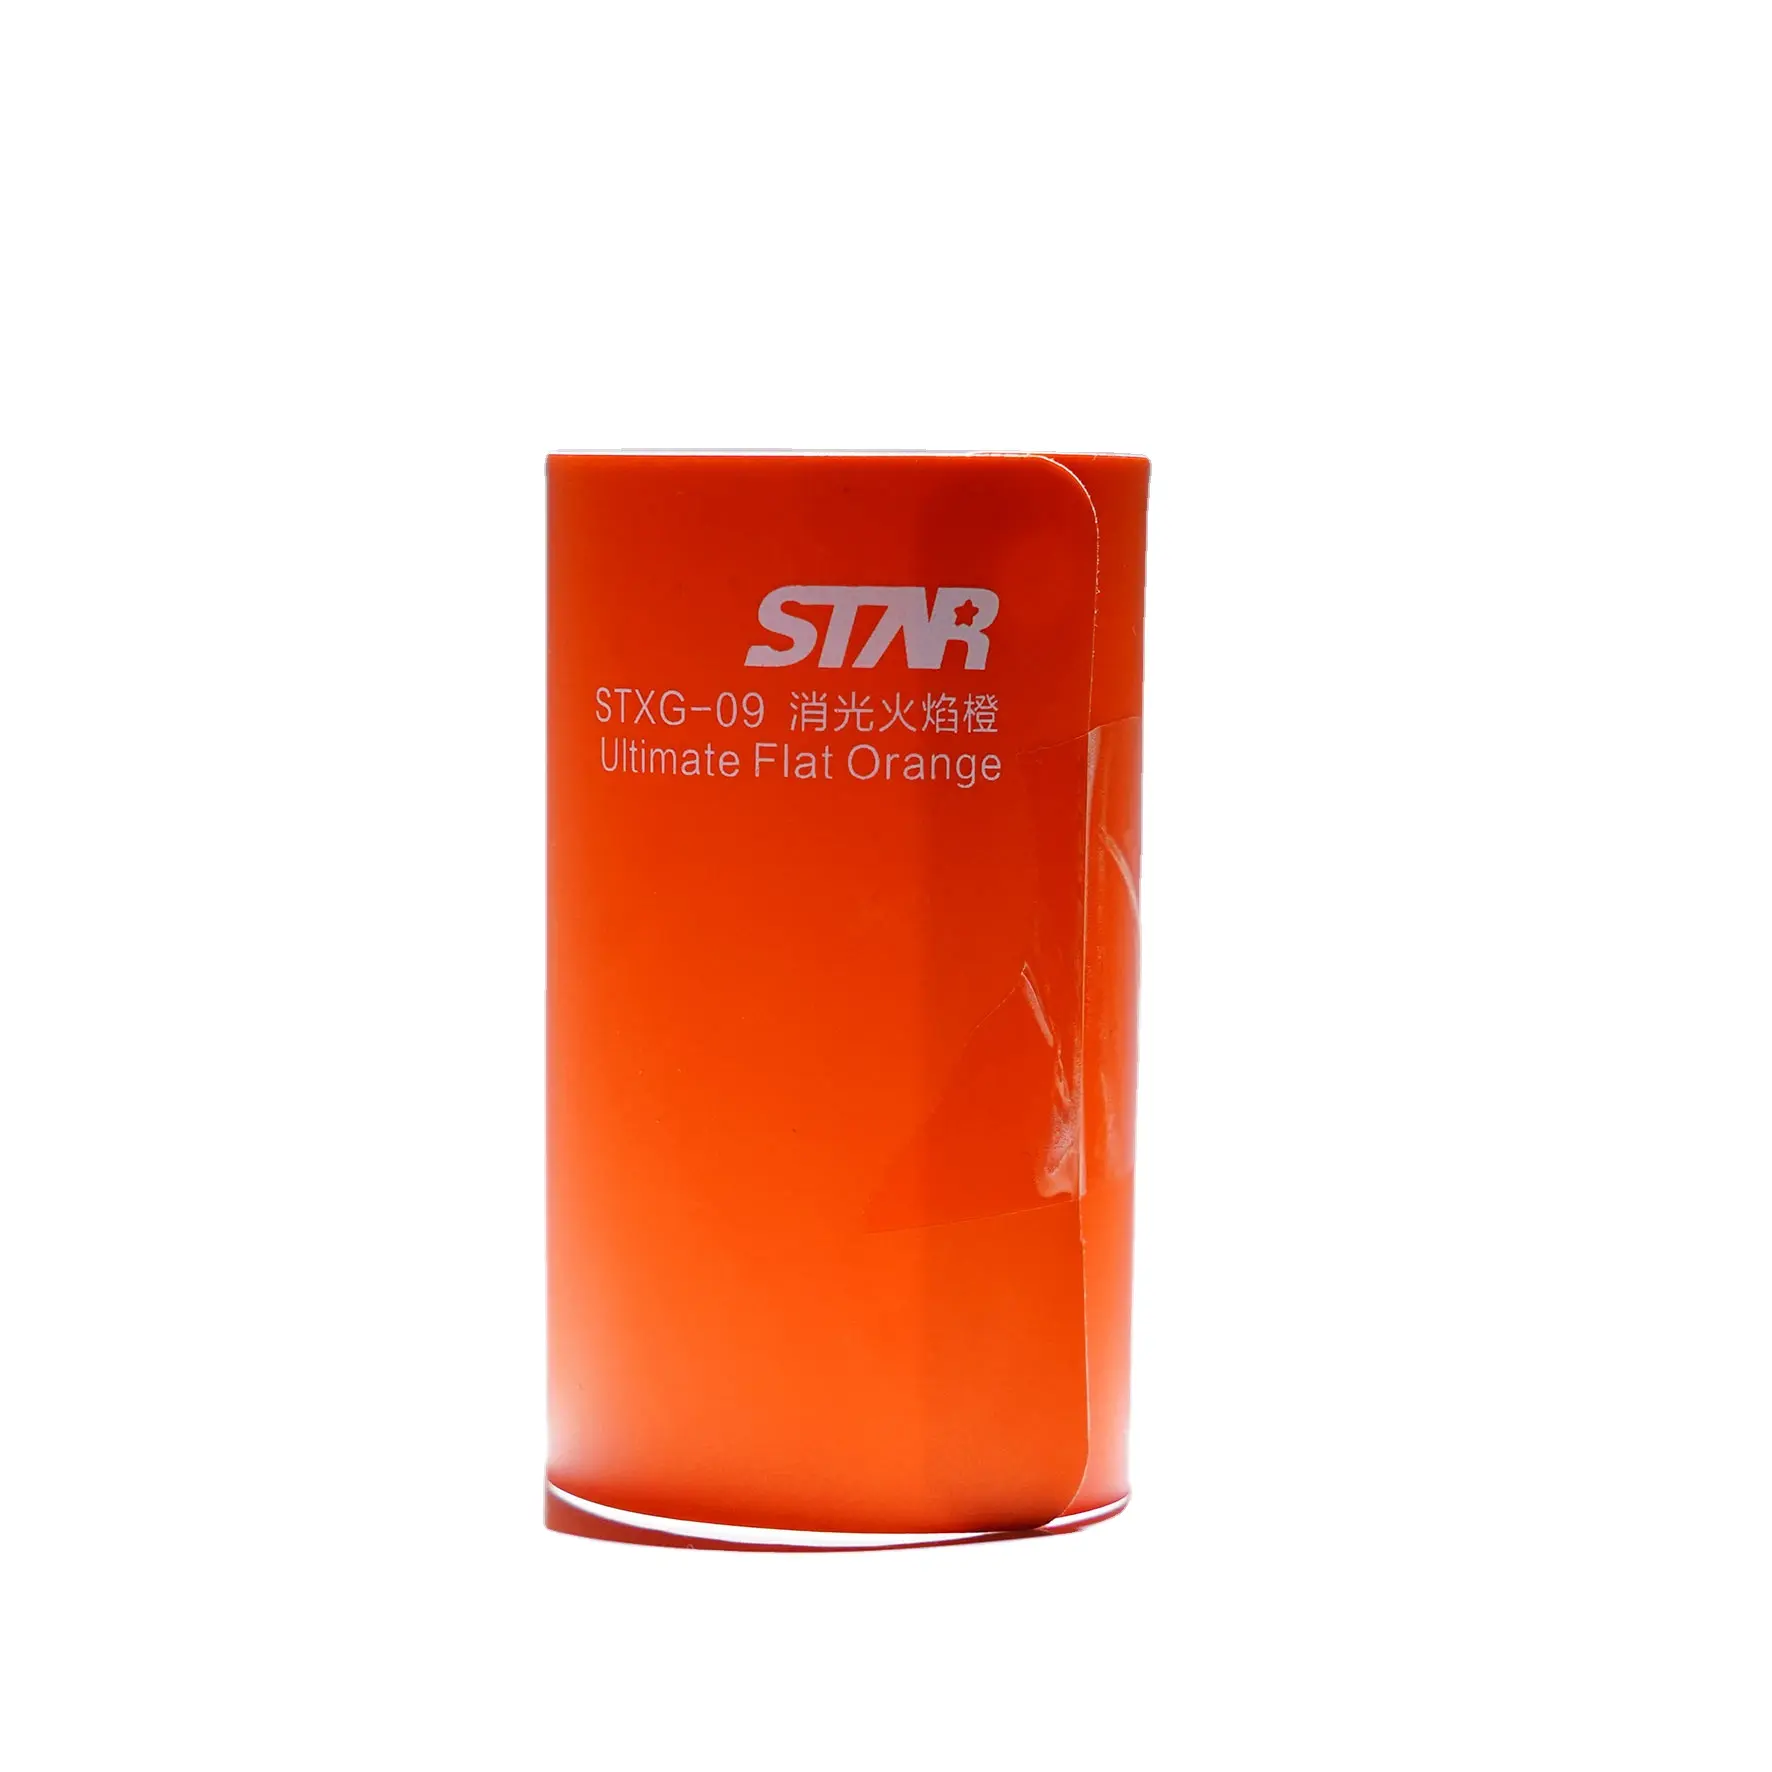 STXG-09 Cuối Cùng Phẳng Orange Trang Trí Xe Hơi DecalMetal Phim PVC Removable Sticker Tự Động Động Cơ Cơ Thể Bọc